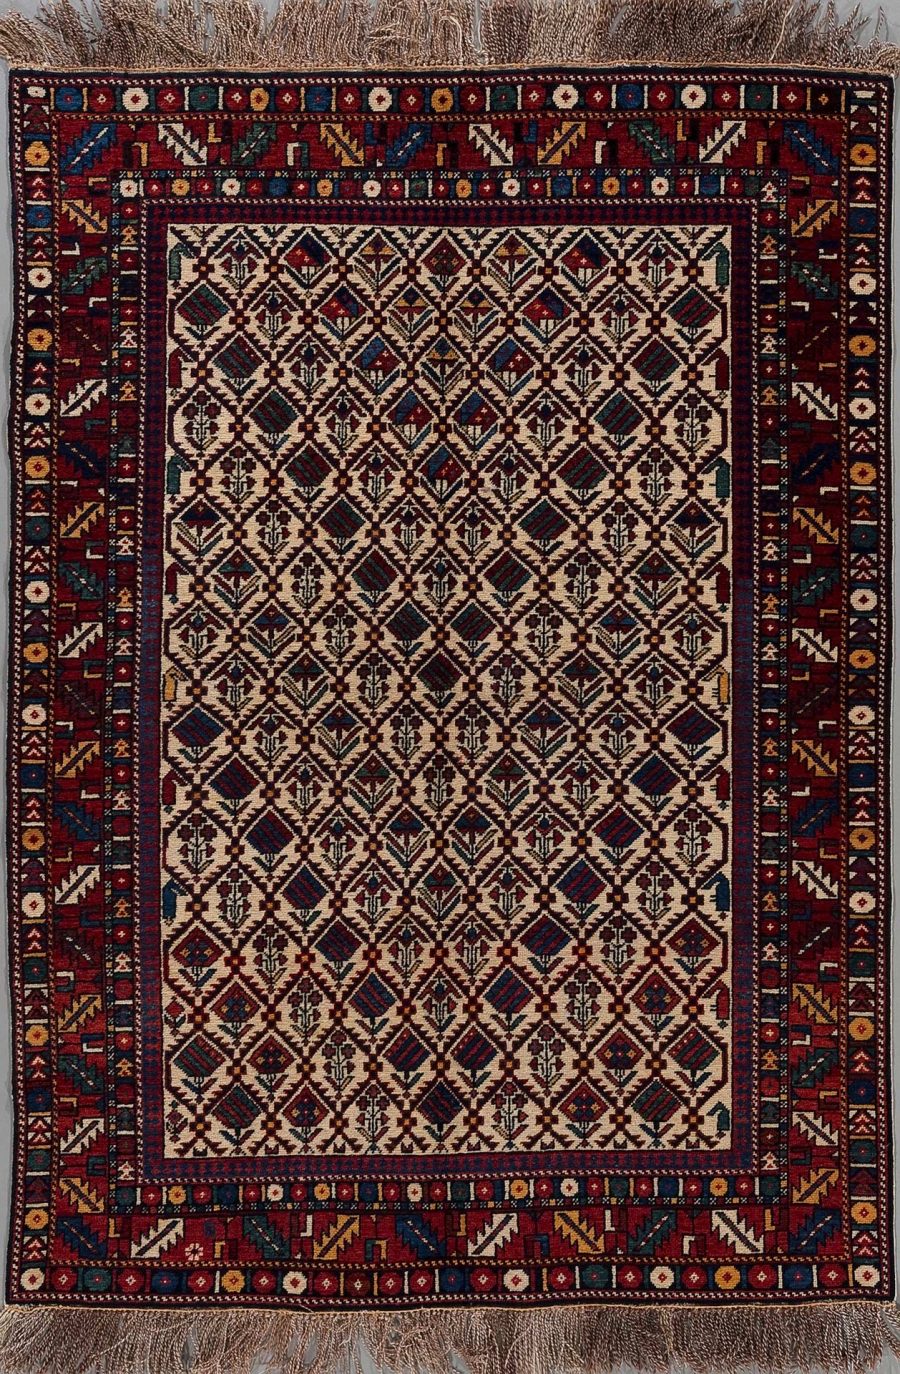 Traditioneller handgeknüpfter Teppich mit komplexen Mustern in warmen Rottönen sowie Blau-, Creme- und Brauntönen, aufgehängt vor einem neutralen Hintergrund.